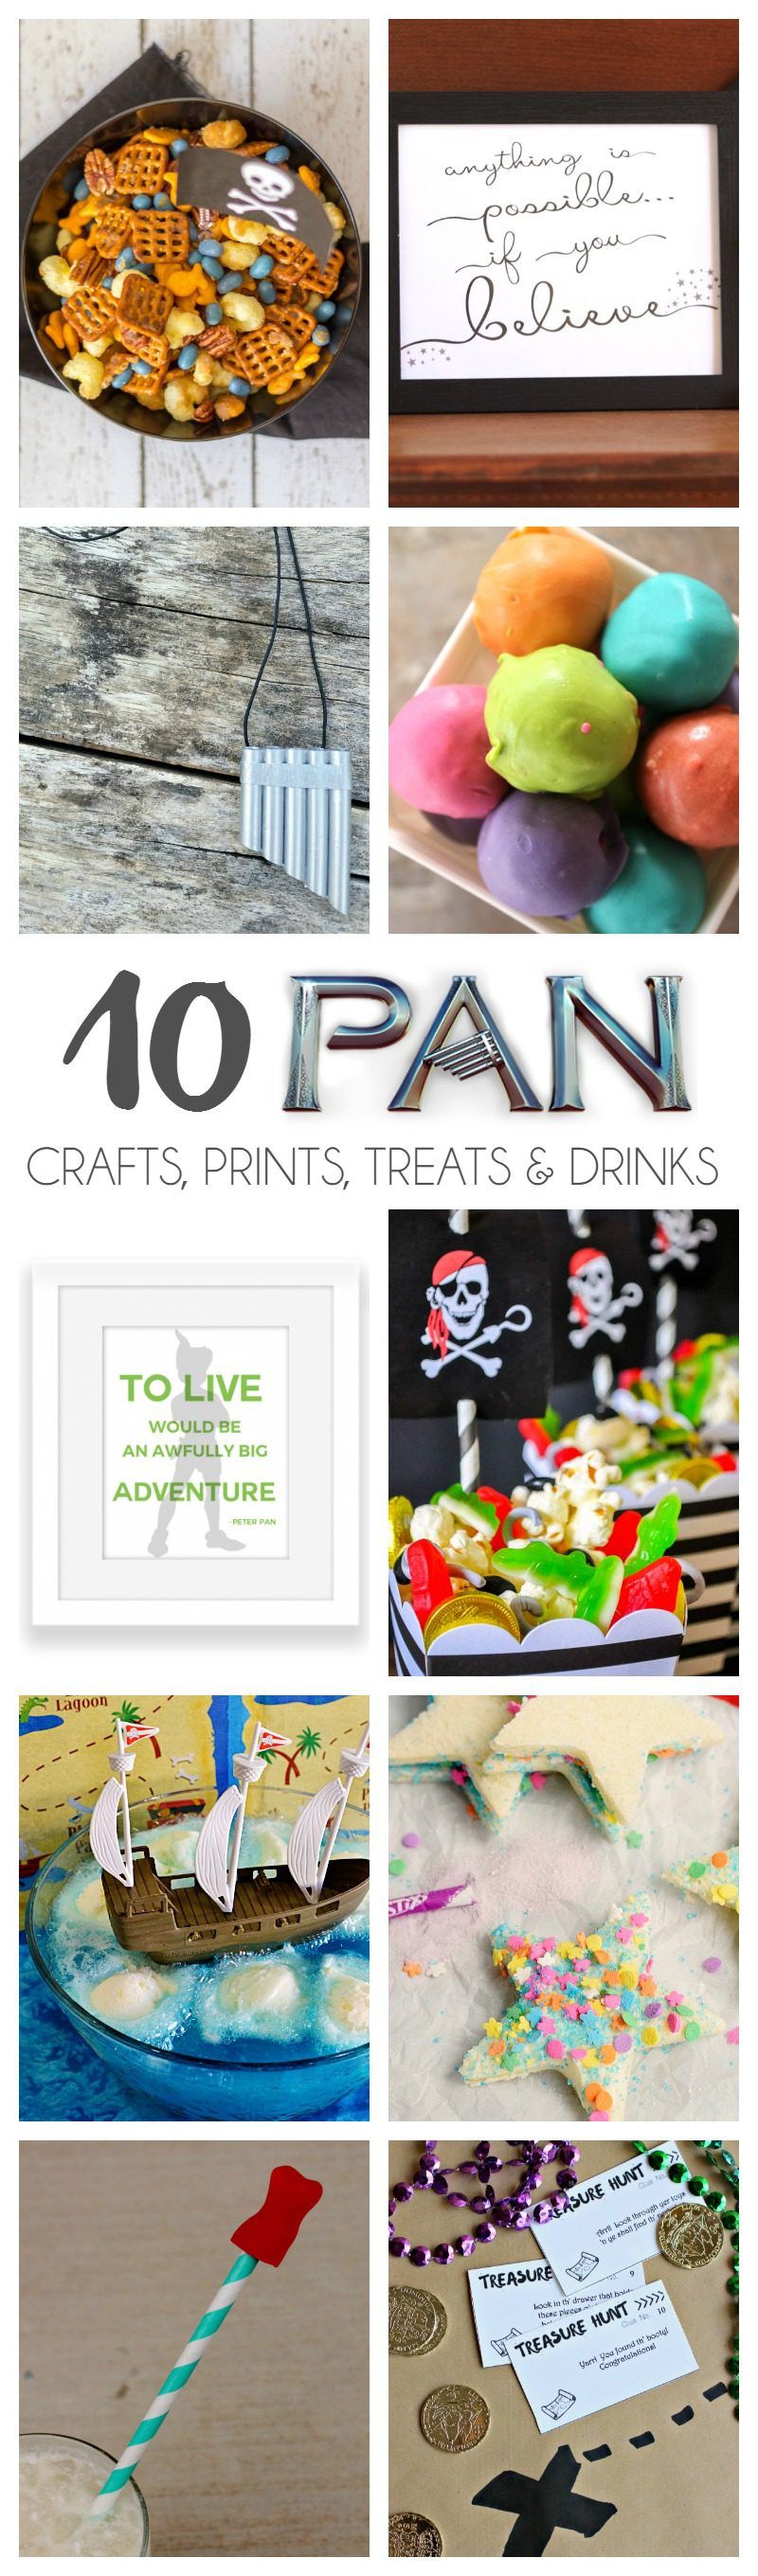 10 Pan Crafts, Prints, Treats & Drinks